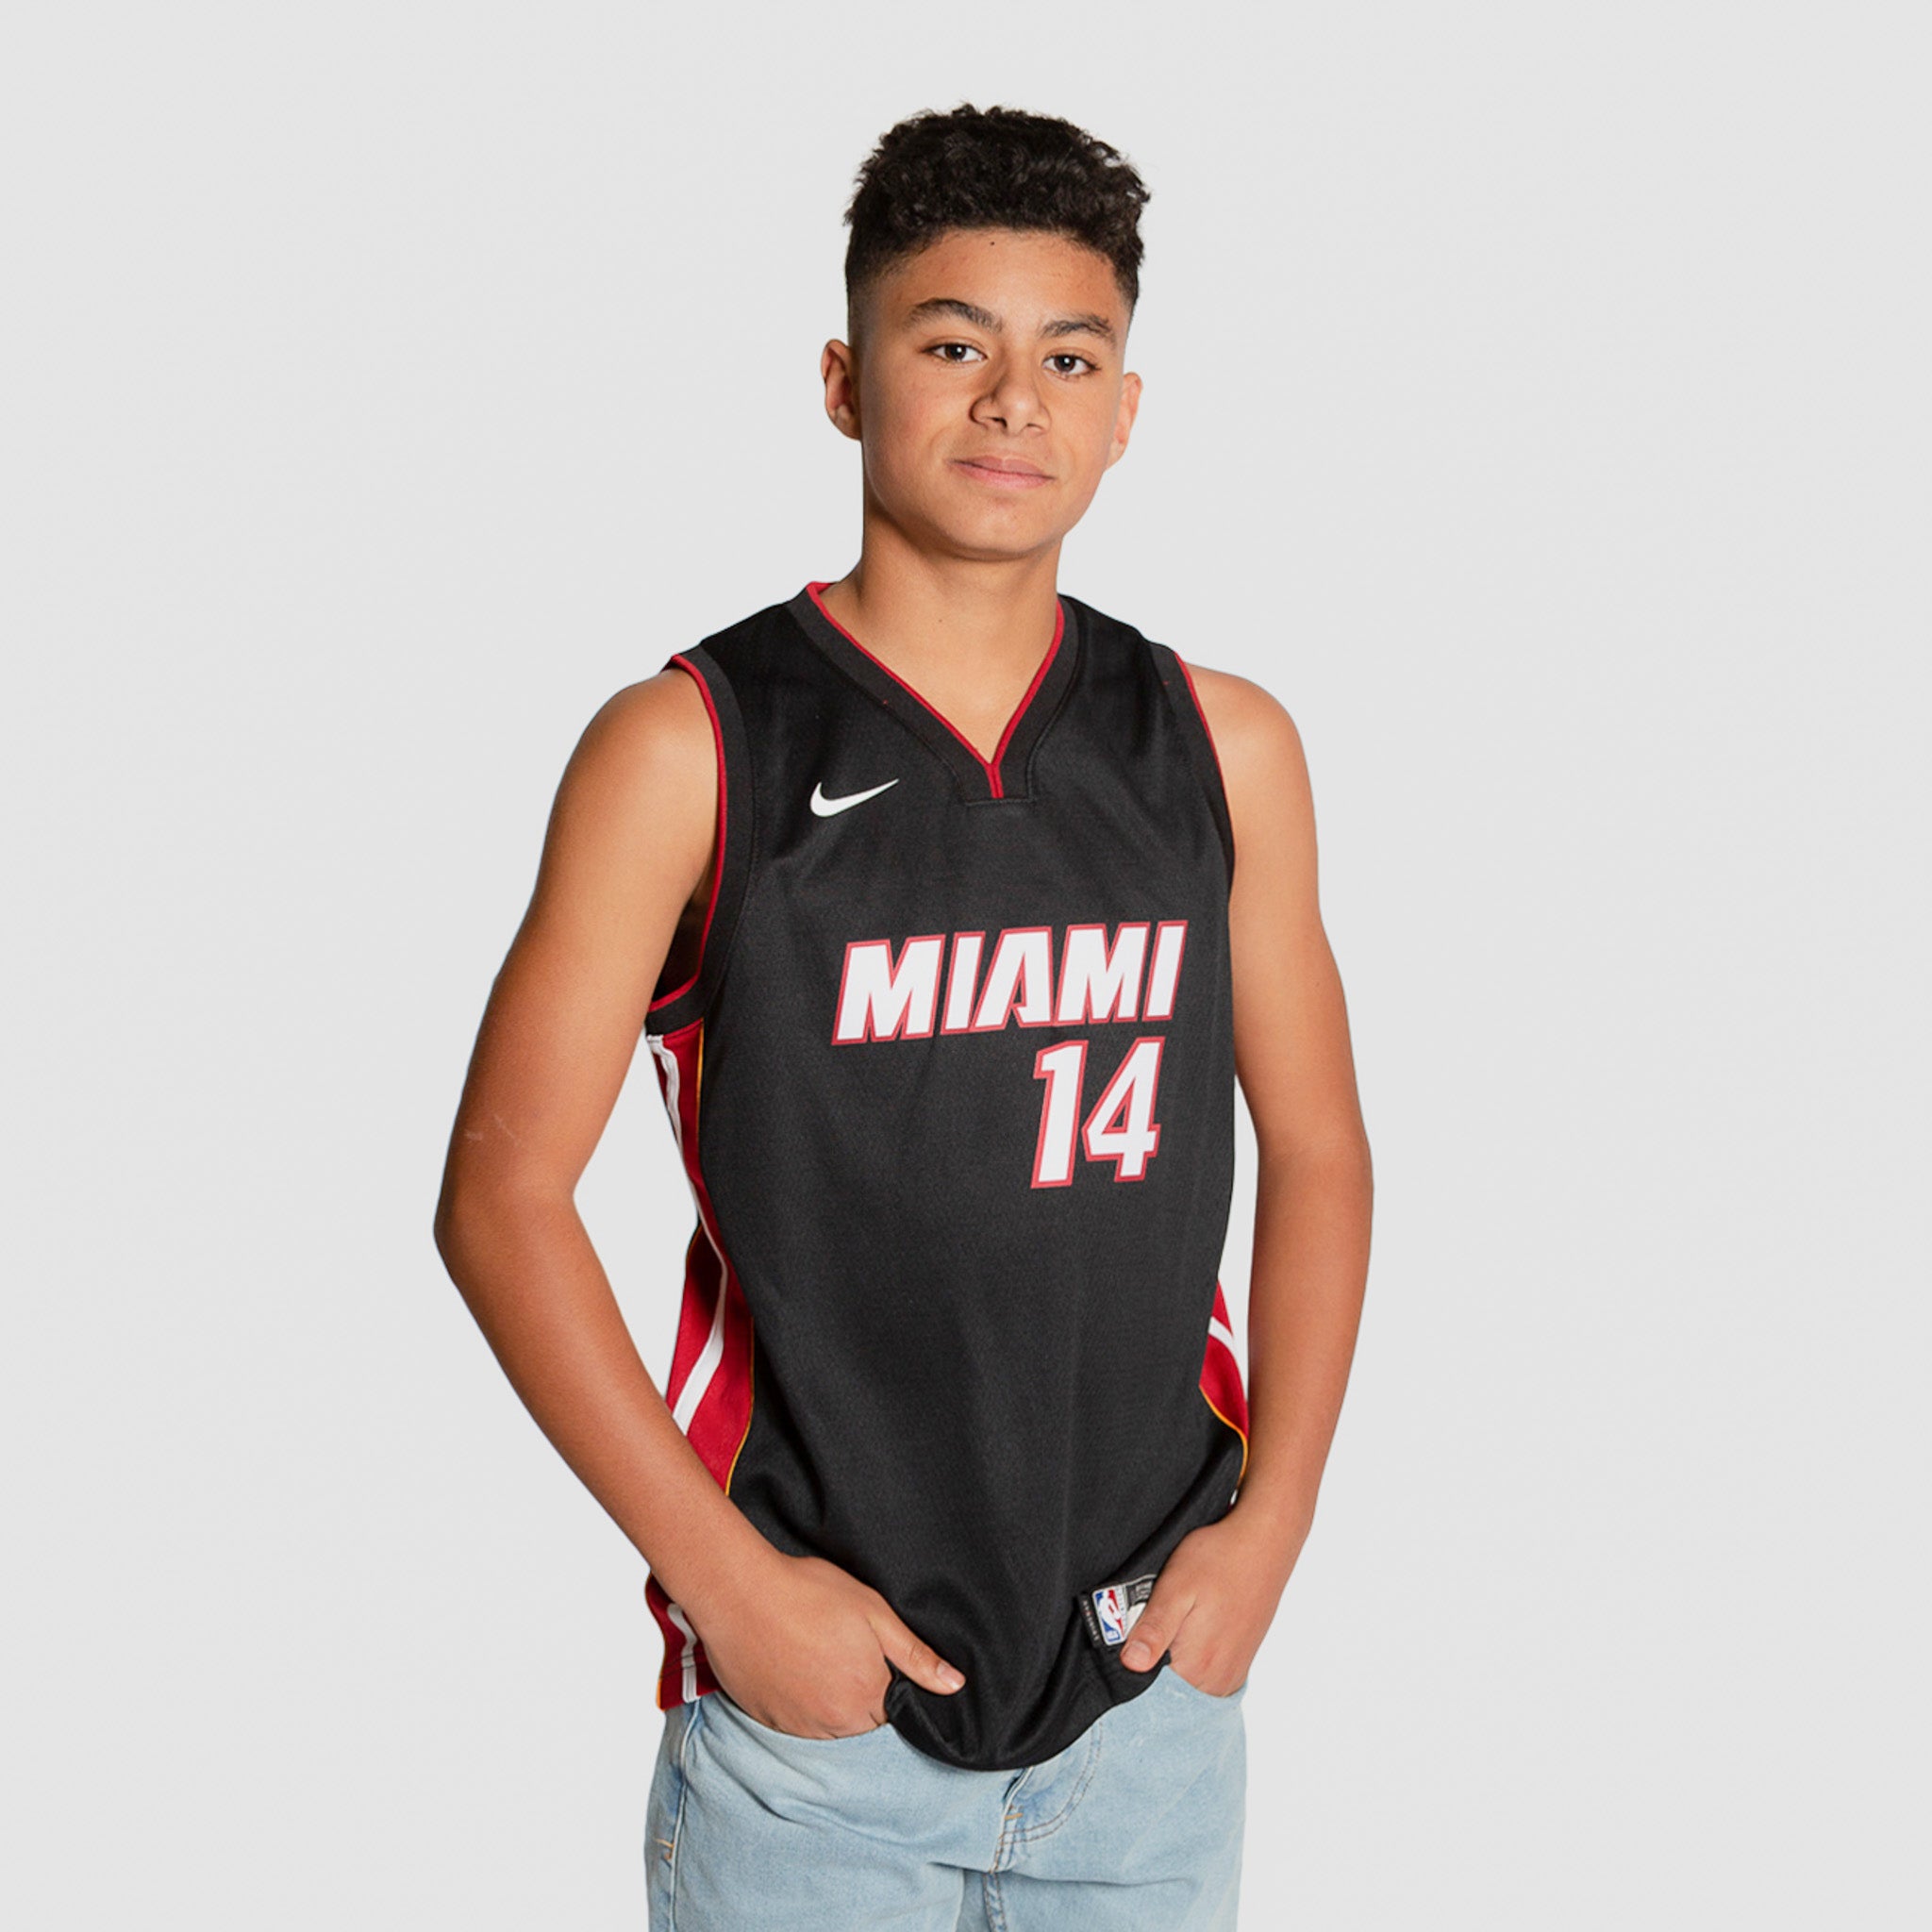 Tyler Herro Miami Heat jersey